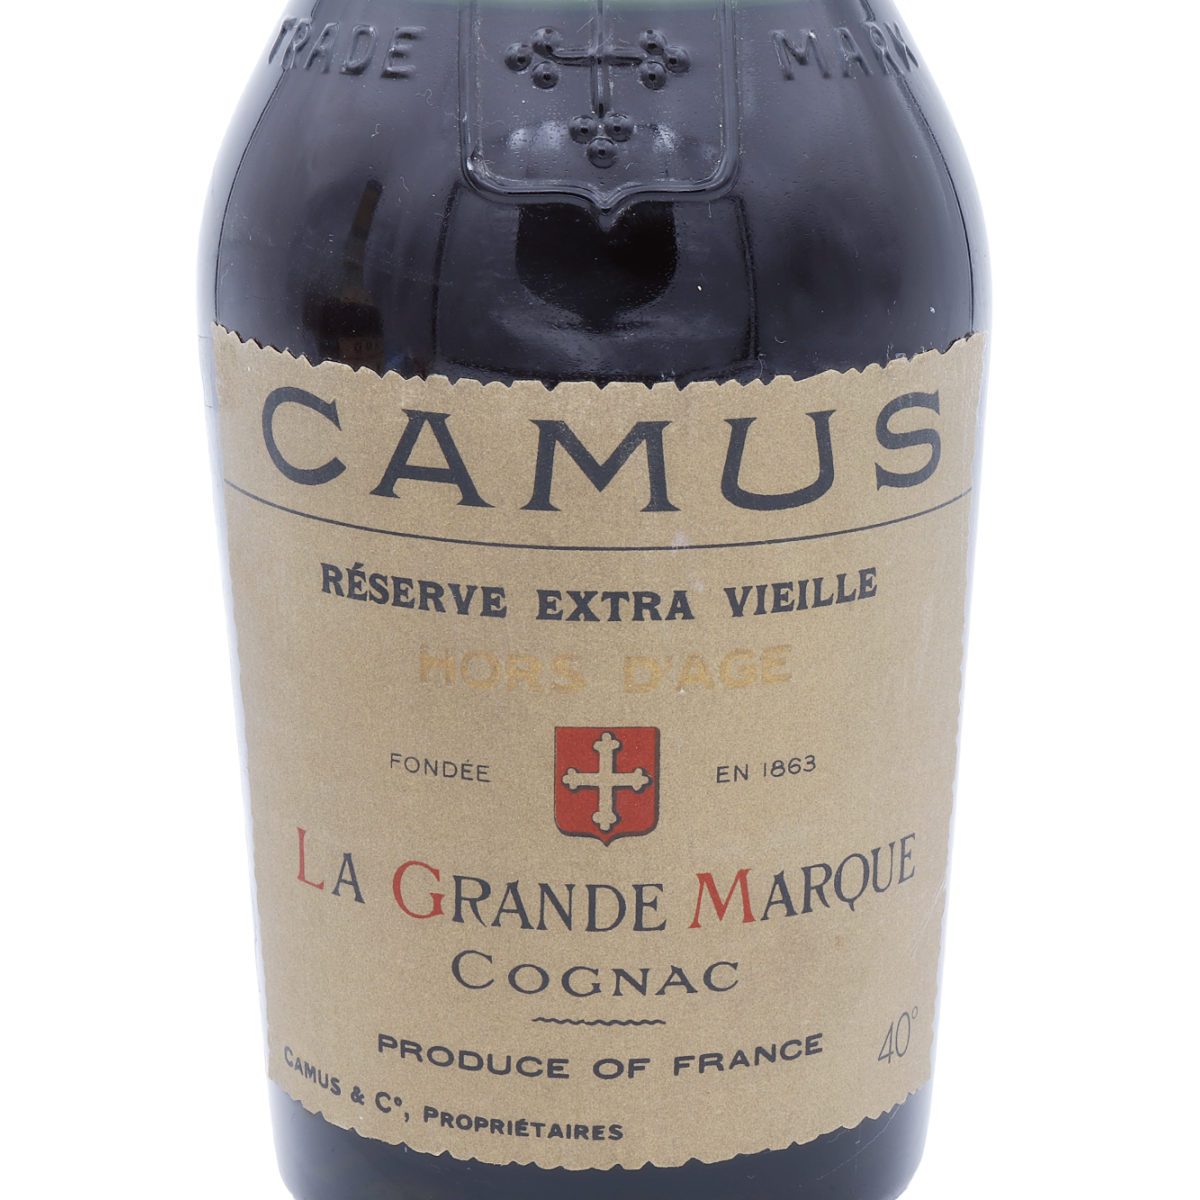 Camus Cognac Reserve Extra Vieille 1960